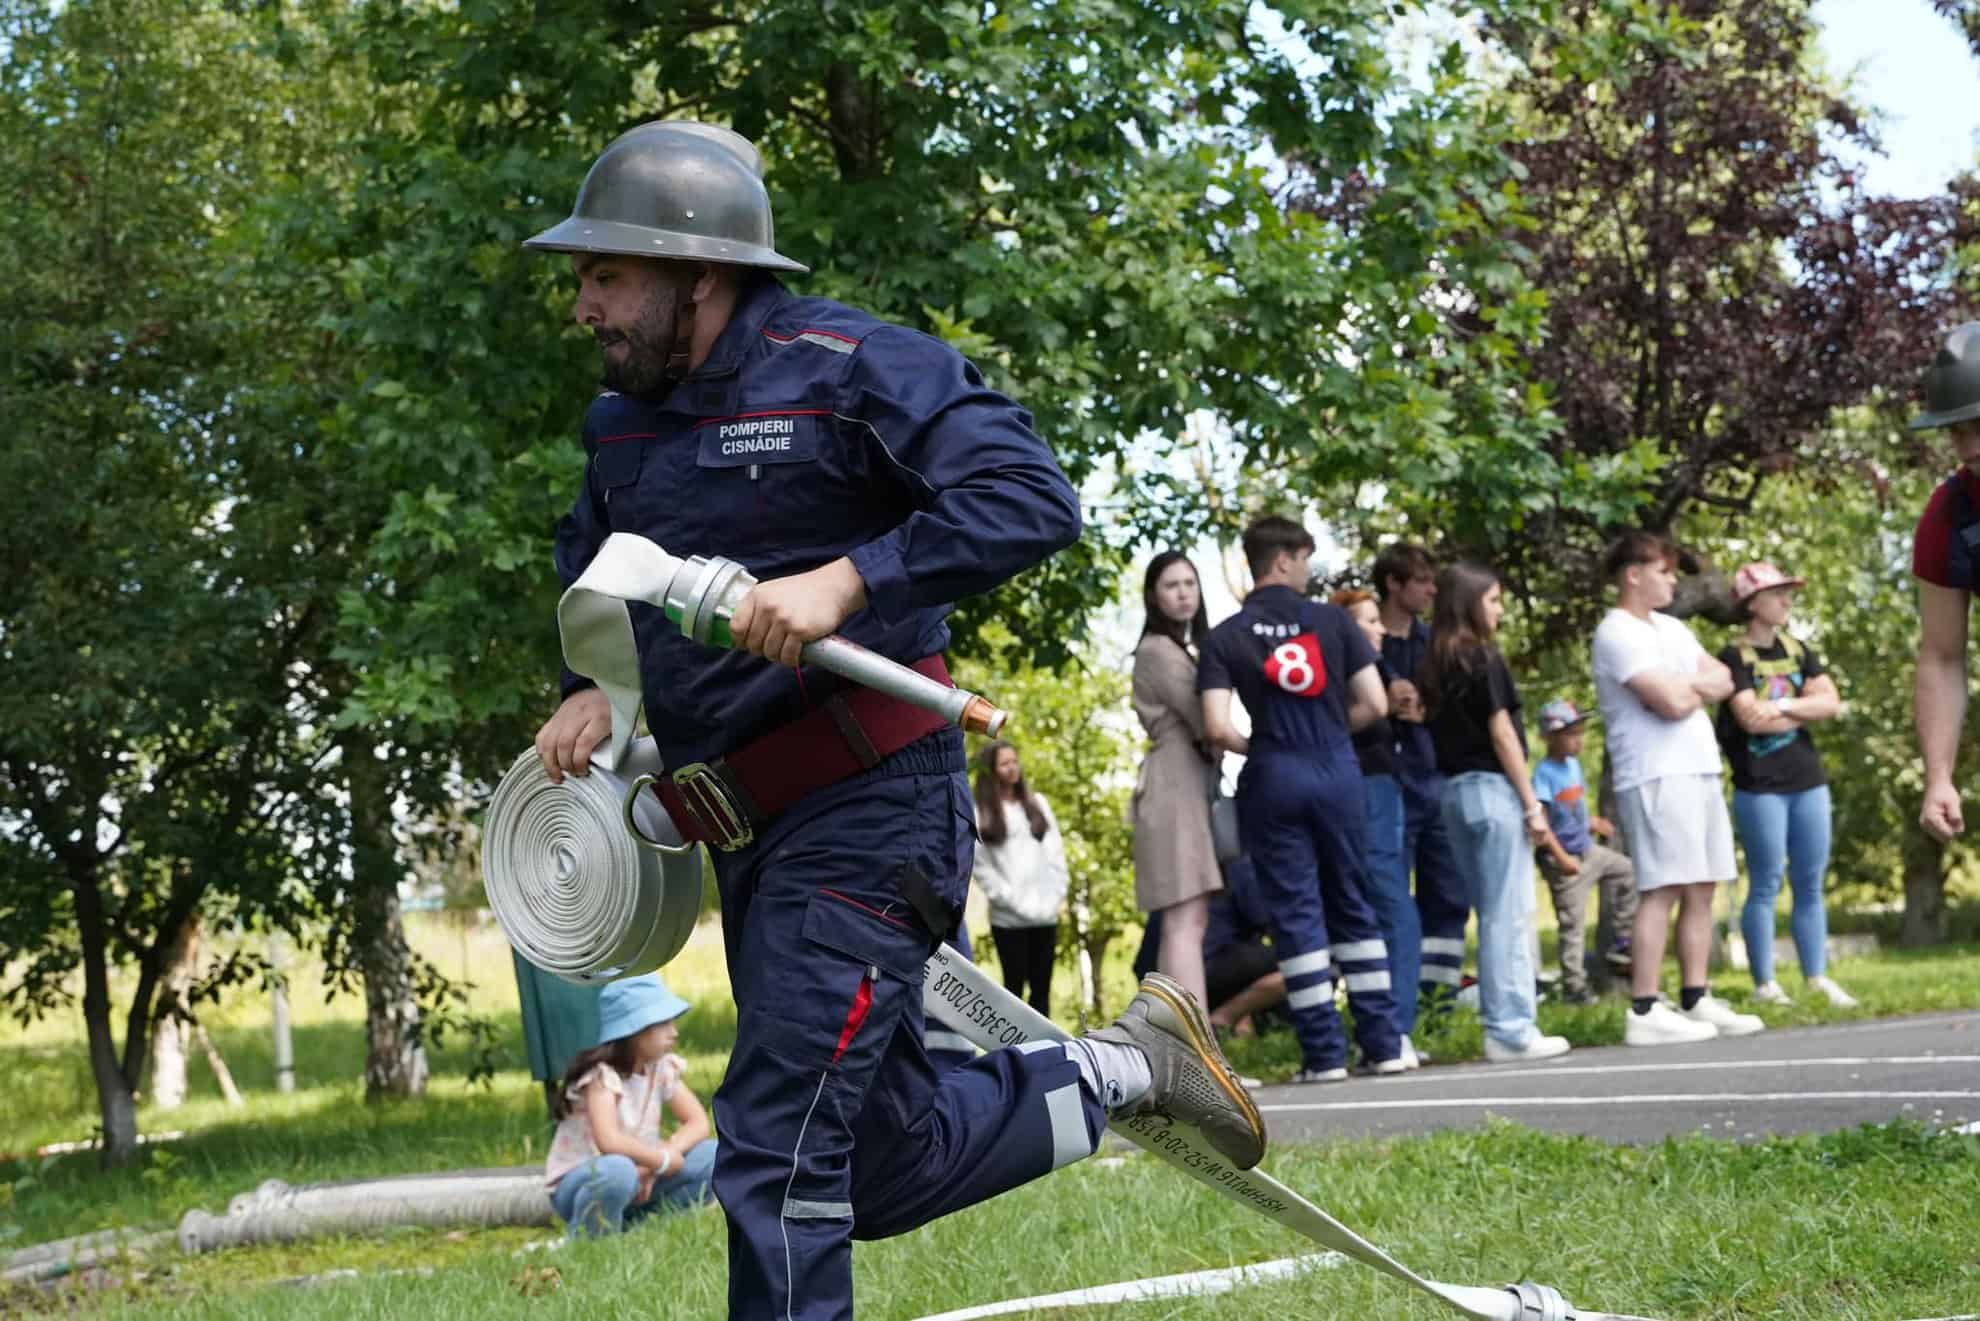 svsu sasu câștigător al competiției pompierilor din județul sibiu (foto)